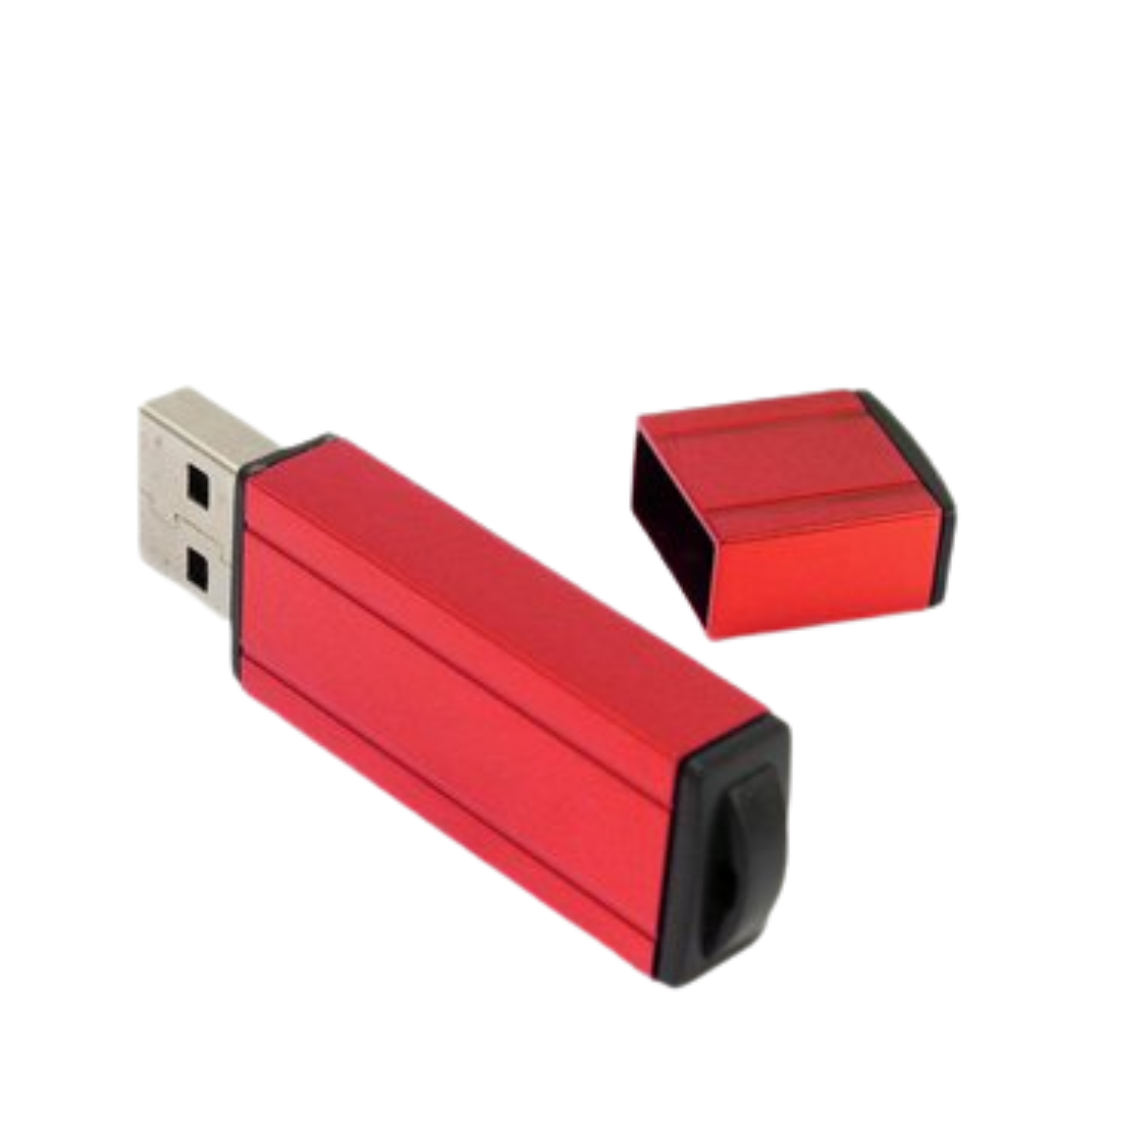 USB309, MEMORIA USB LINER